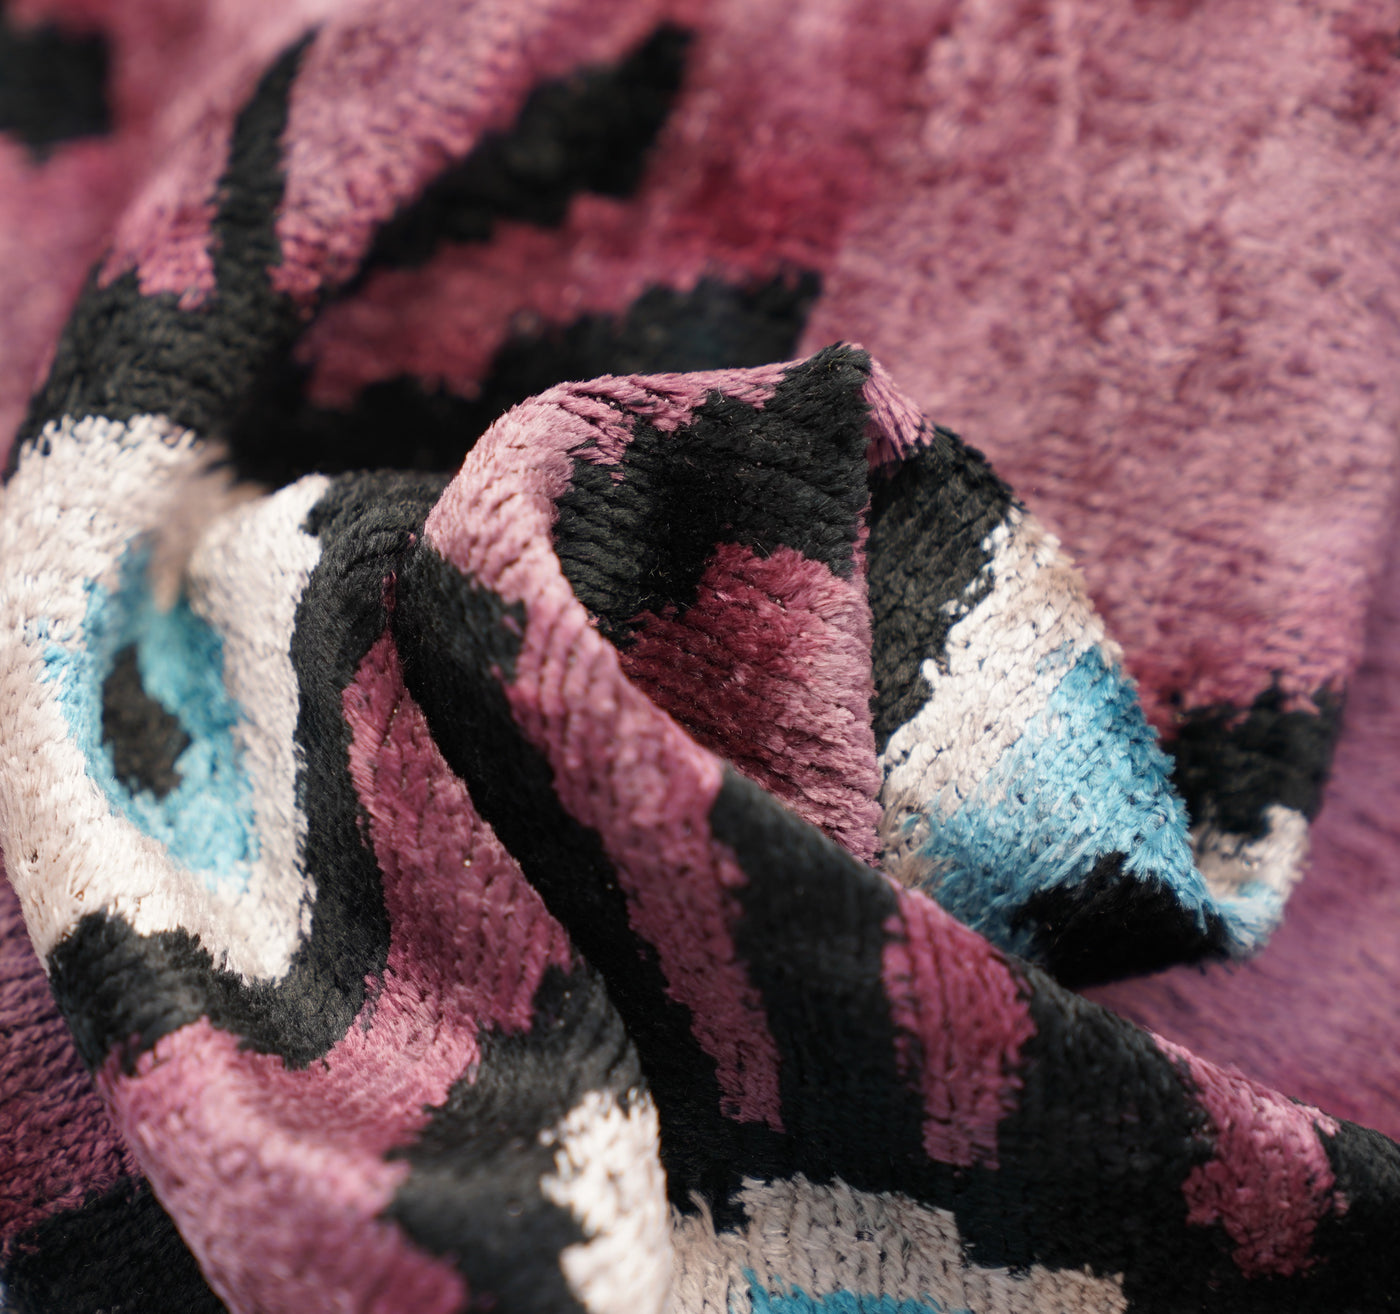 Canvello, funda de almohada decorativa con estampado de tigre de lujo hecha a mano y cojín de seda de terciopelo suave de inserción Premium, 16x16 pulgadas